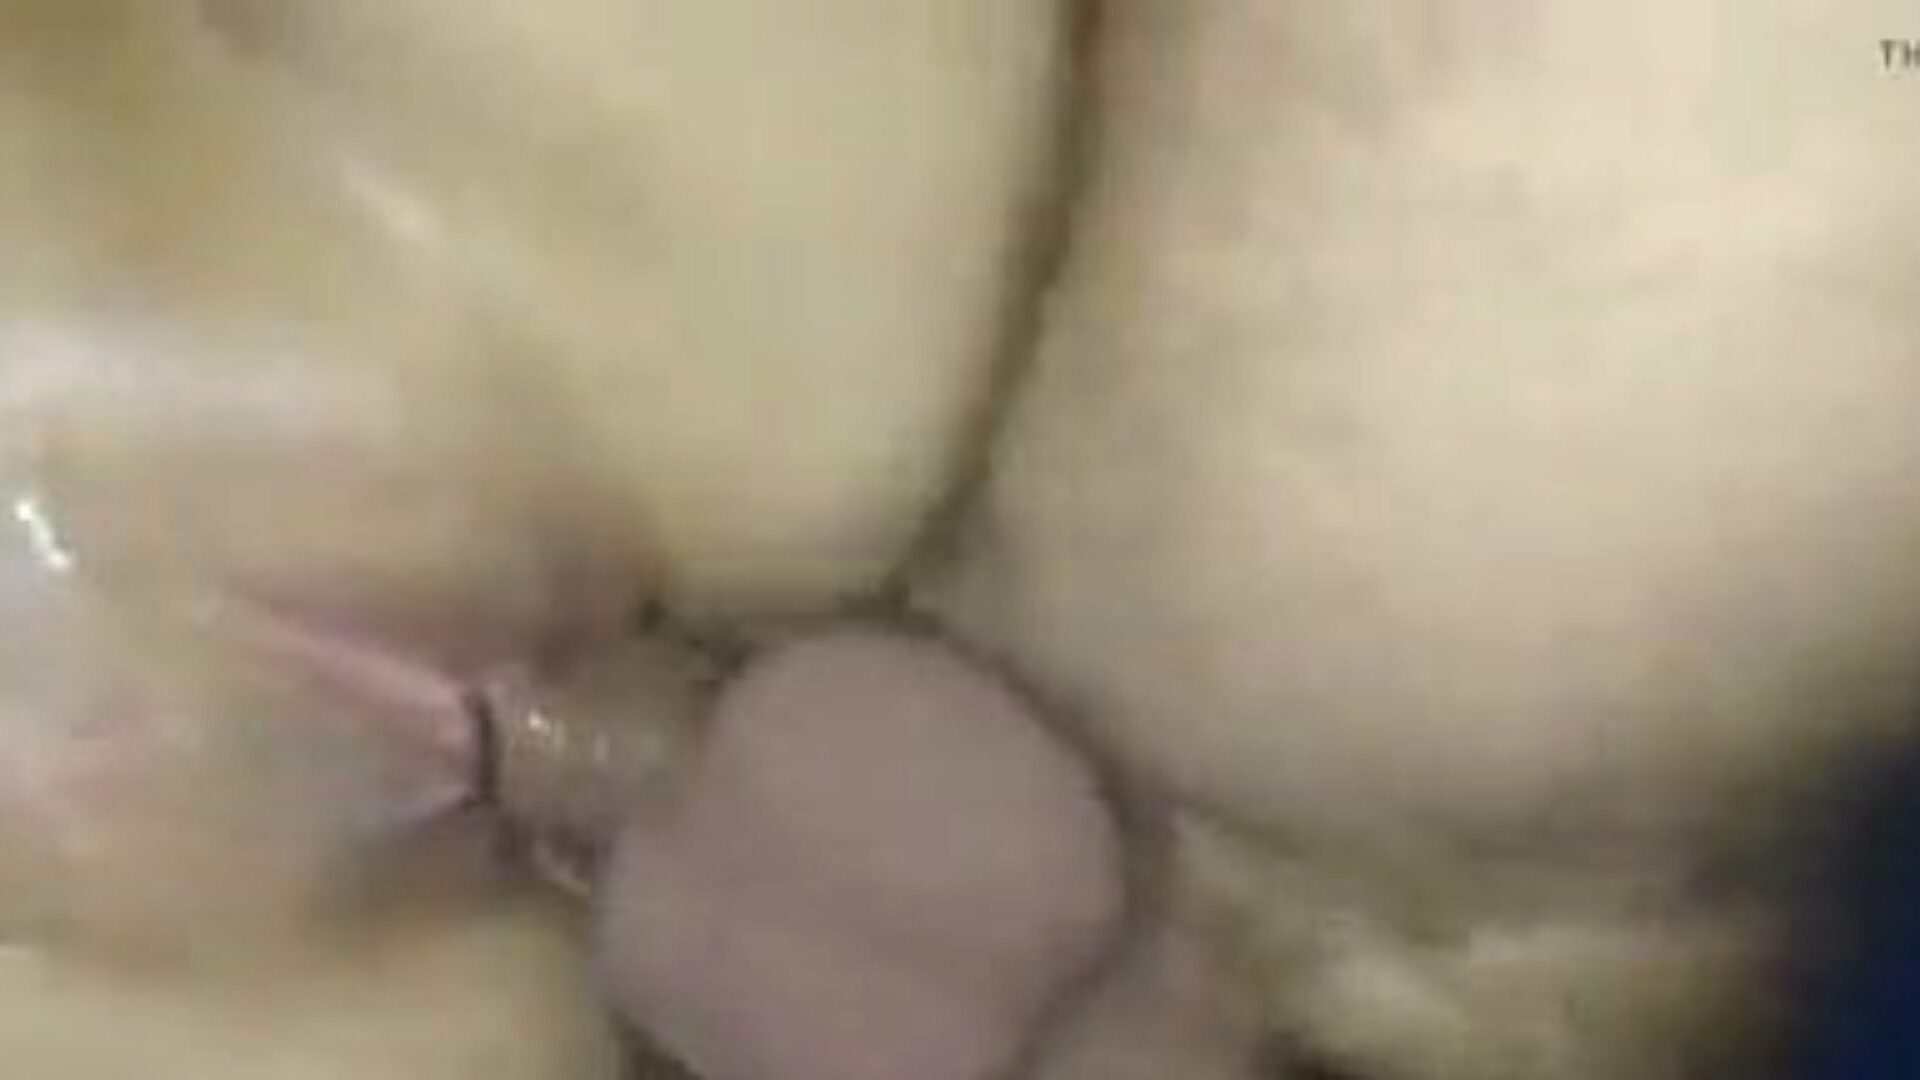 meine feuchte muschi: vídeo pornô de buceta grátis 38 - xhamster assistir clipe de sexo meine feuchte muschi tubo de graça no xhamster, com o bando mais sexy de episódios de cenas de filmes pornôs de orgasmo e pornografia madura